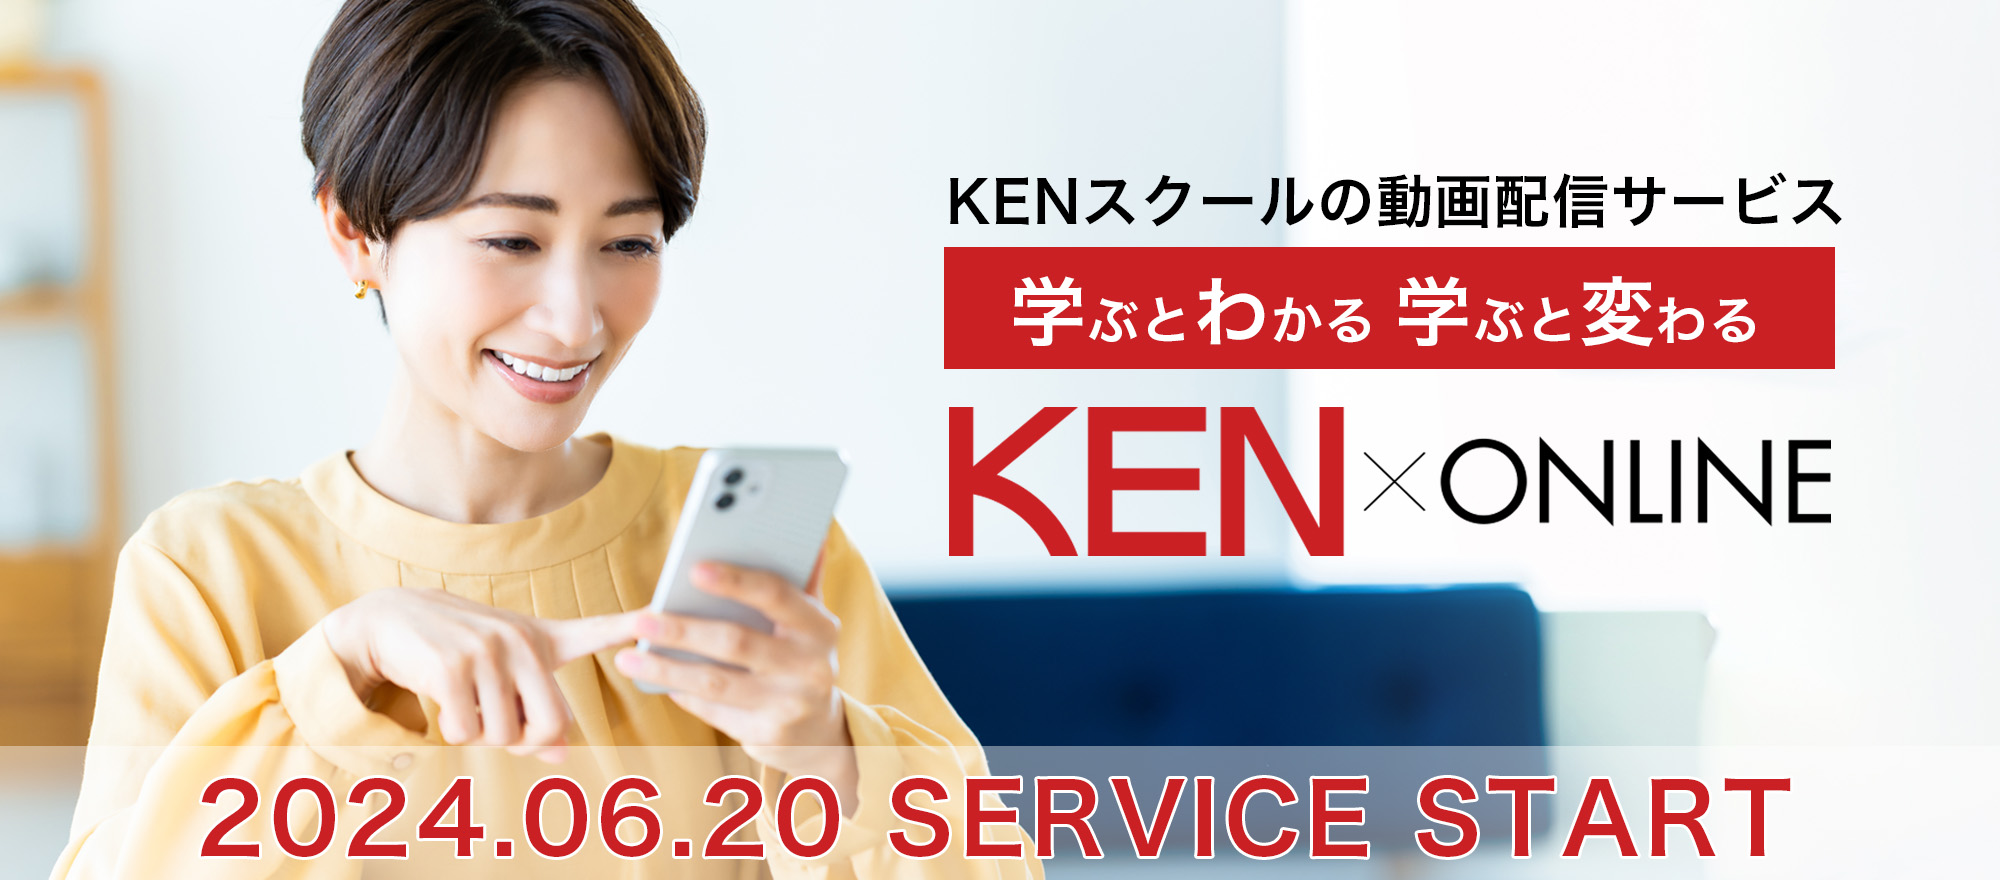 KENスクールの動画配信サービス【KEN×ONLINE】